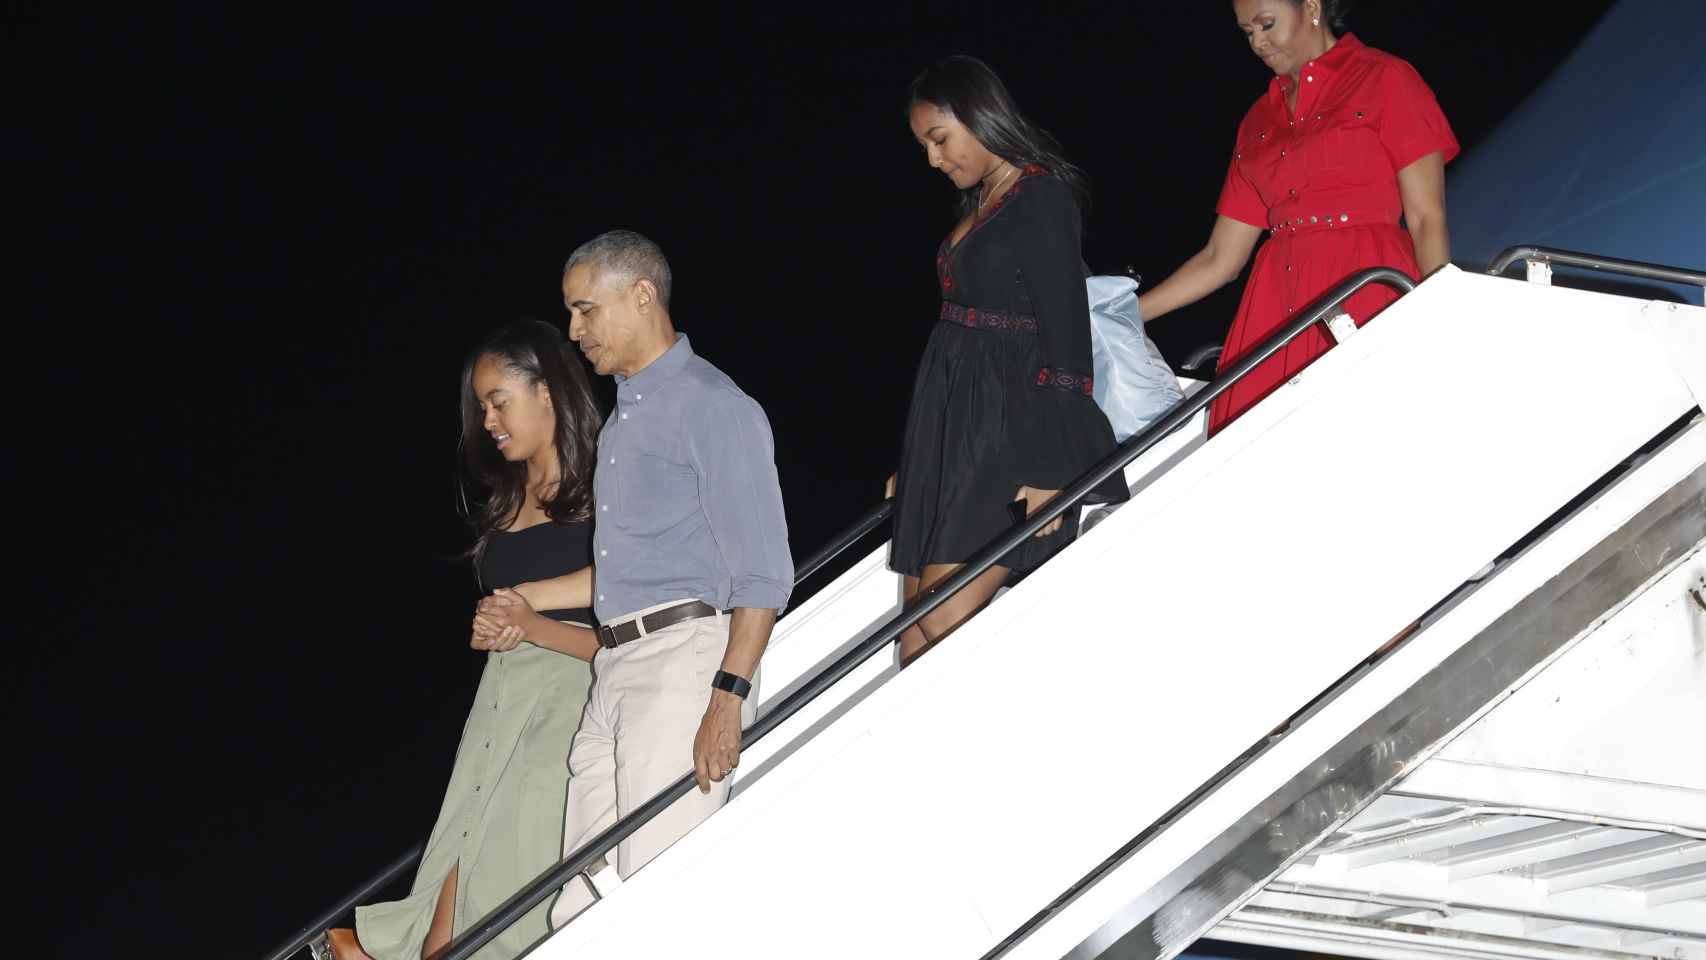 La familia Obama descendiendo del 'Air Force One' en una imagen de 2015.